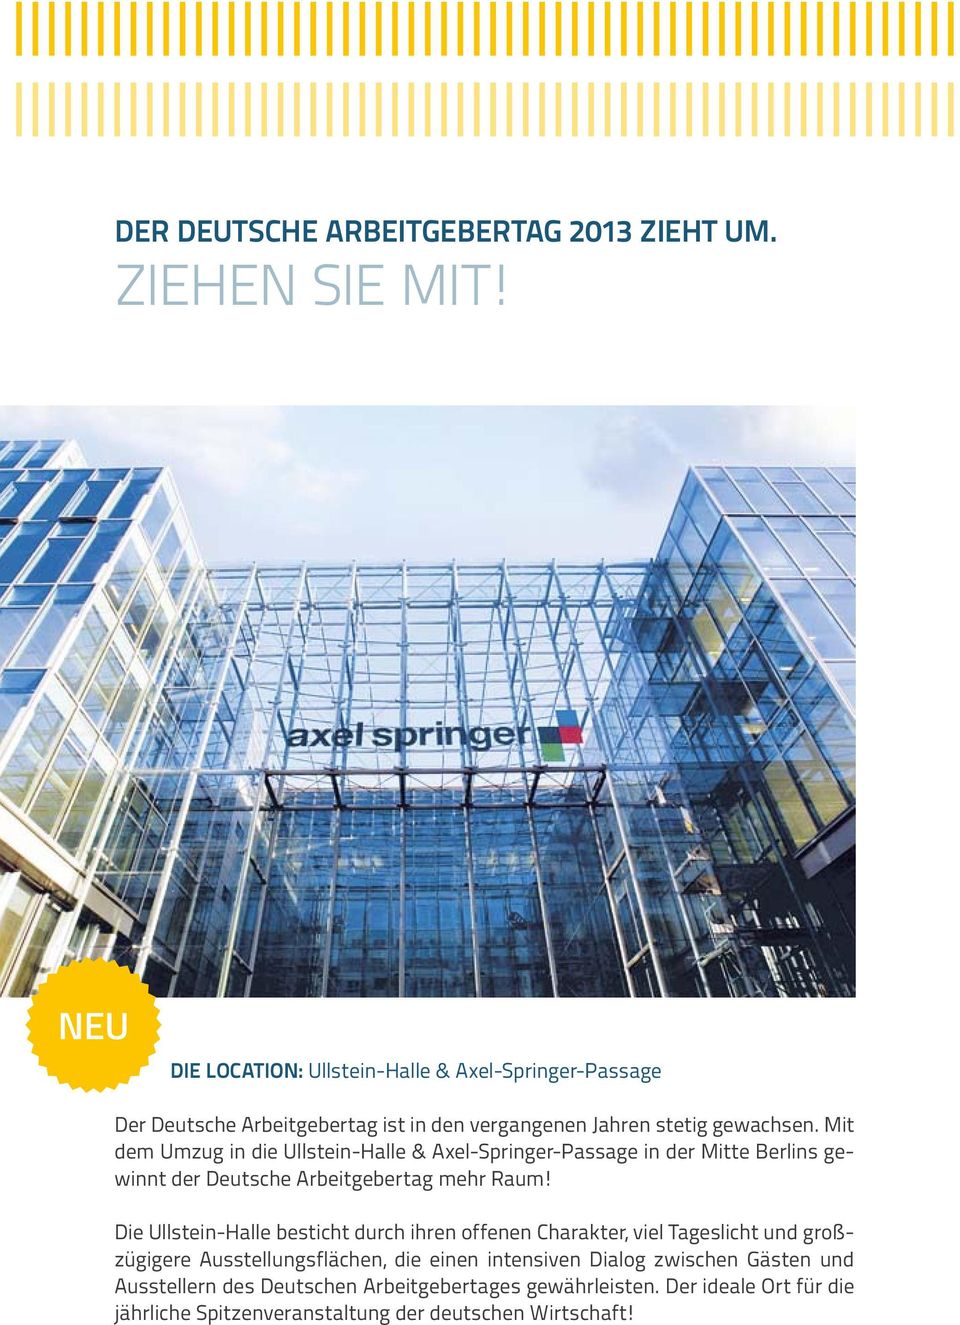 Mit dem Umzug in die Ullstein-Halle & Axel-Springer-Passage in der Mitte Berlins gewinnt der Deutsche Arbeitgebertag mehr Raum!